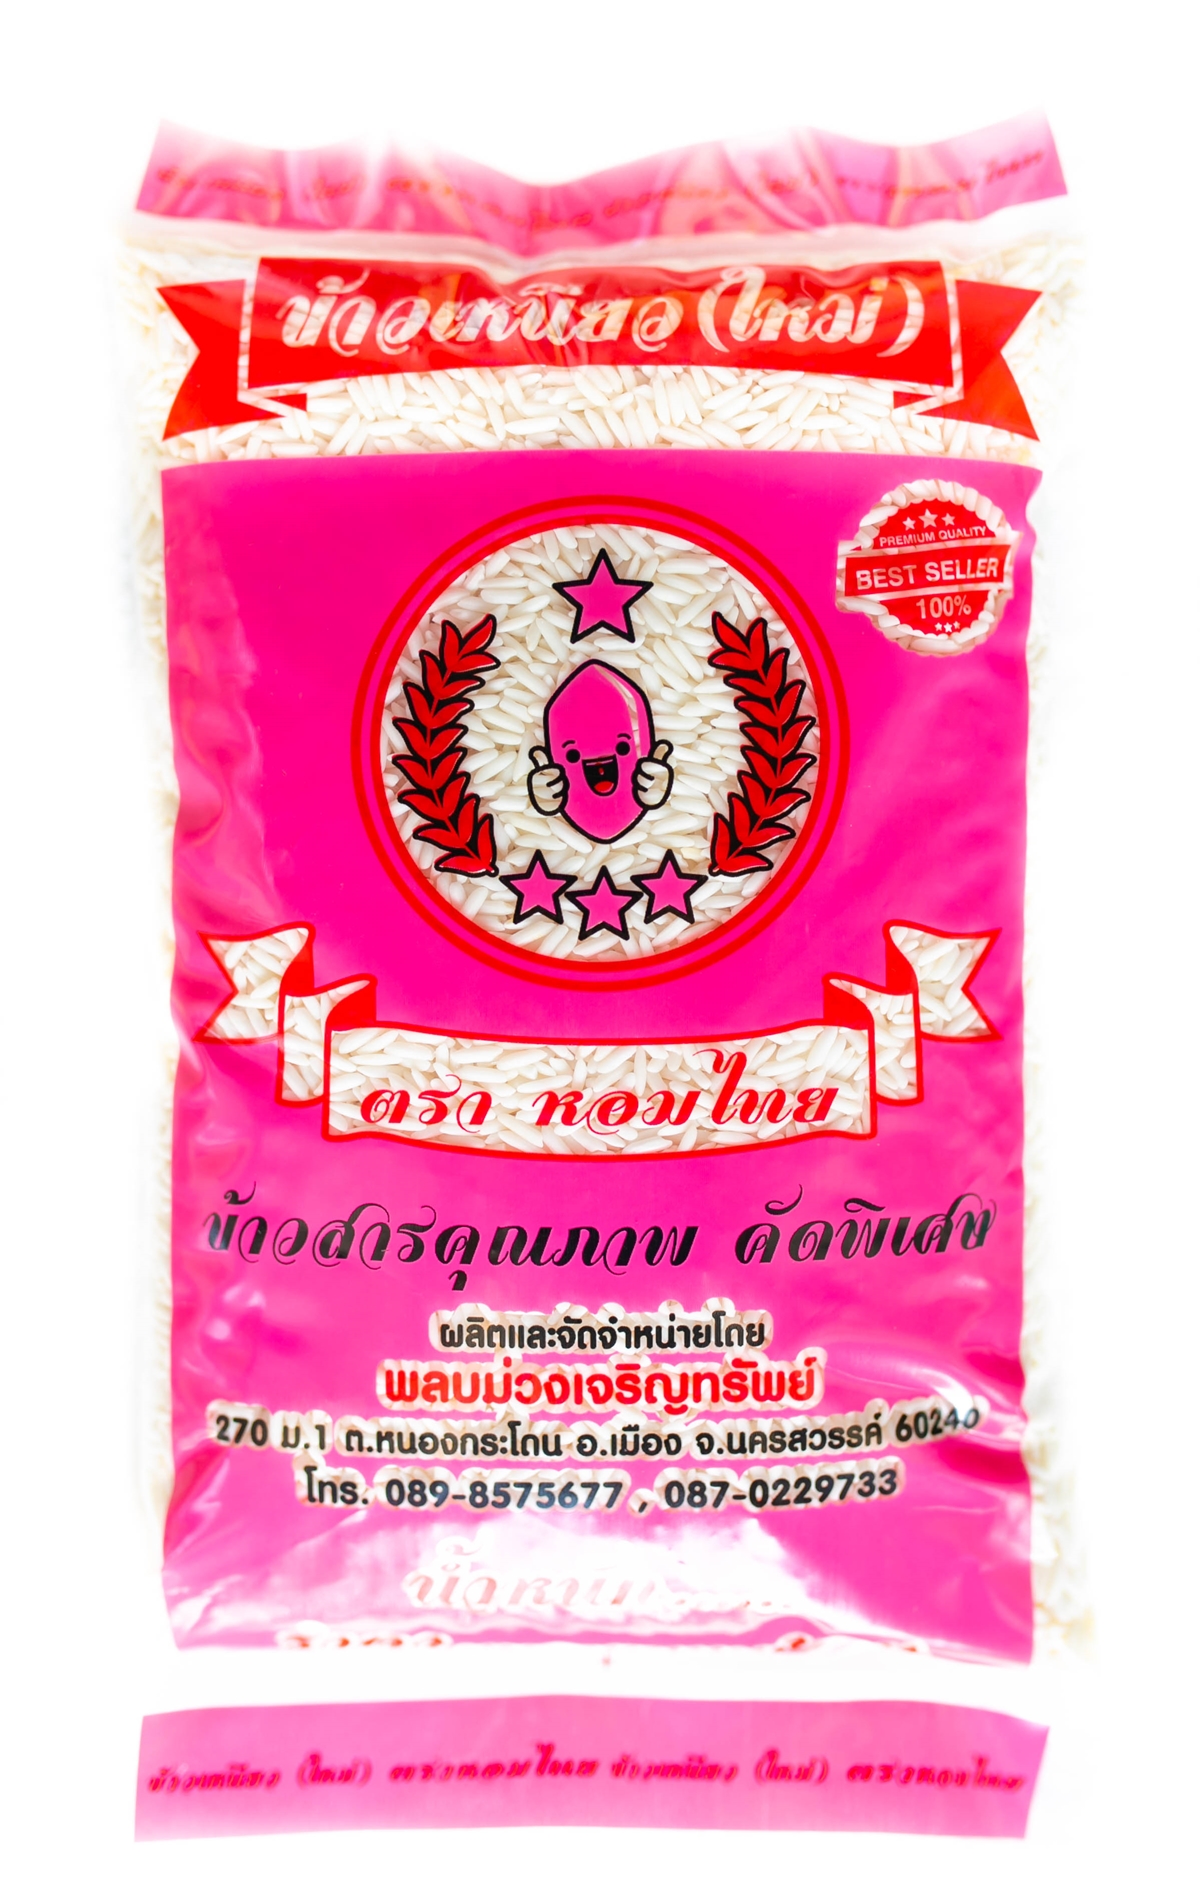 ข้าวเหนียว(ใหม่) 1กก. ตราหอมไทย(ชมพู)/(New Sticky Rice, Hom Thai brand (Pink) 1kg.